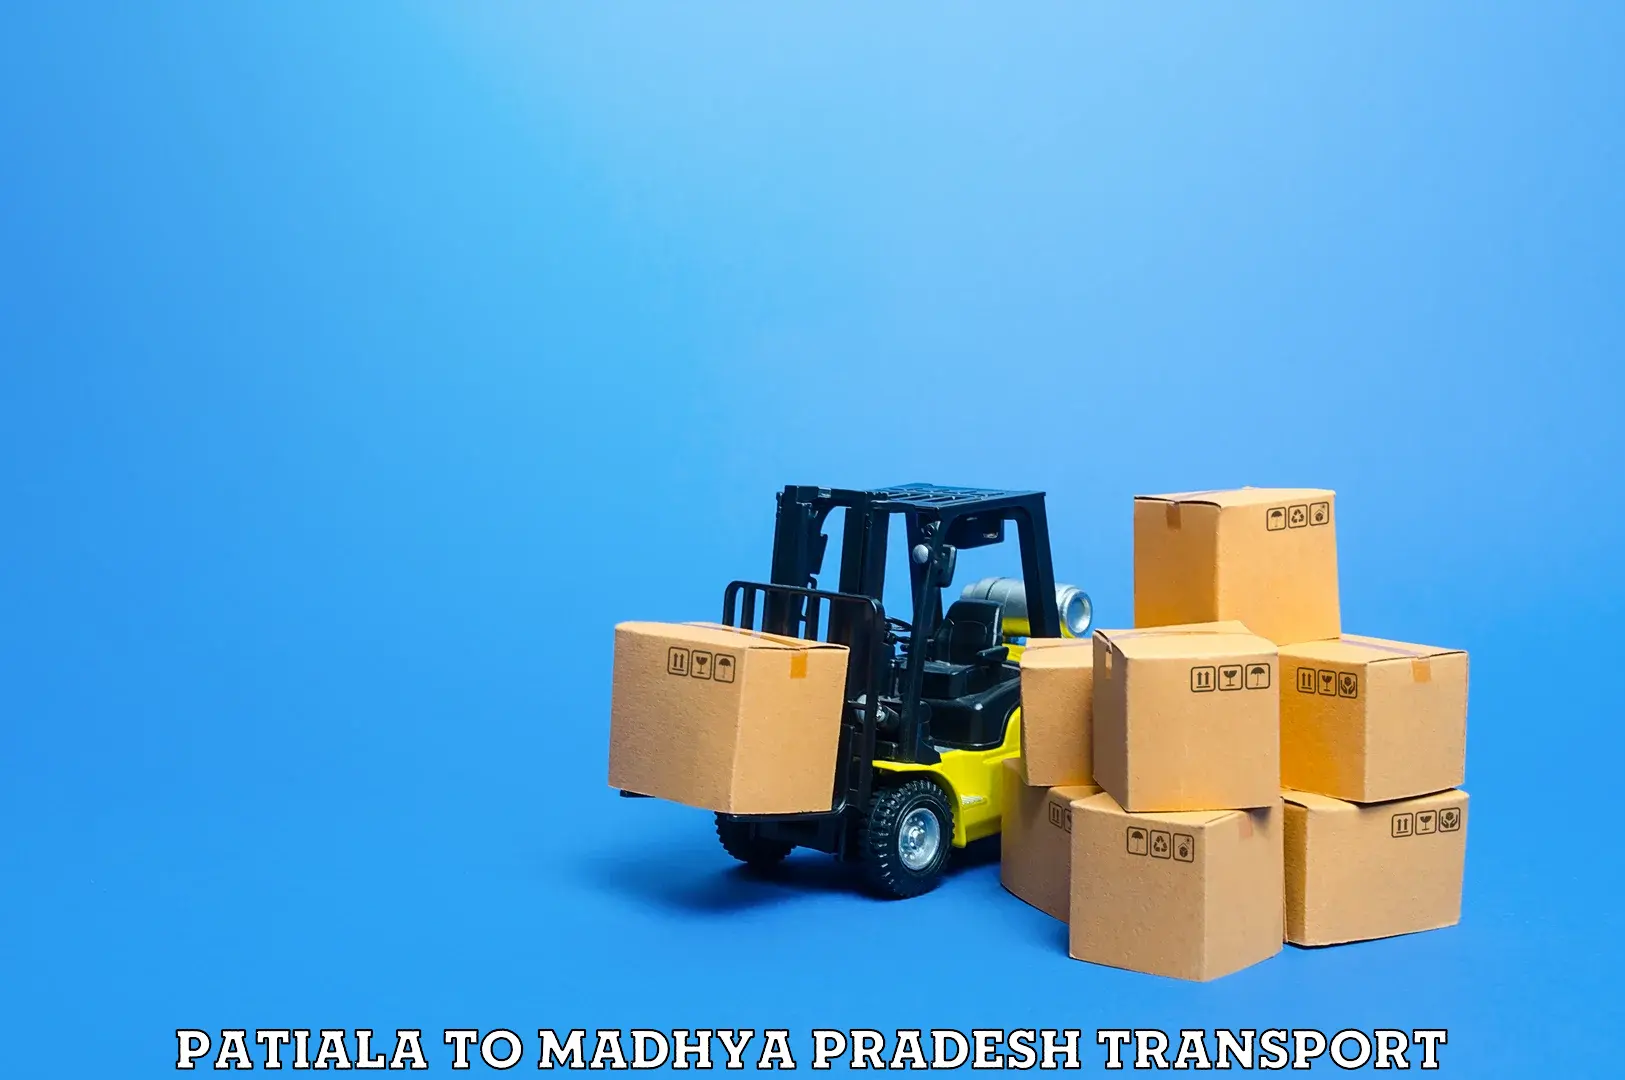 Delivery service Patiala to Garh Rewa